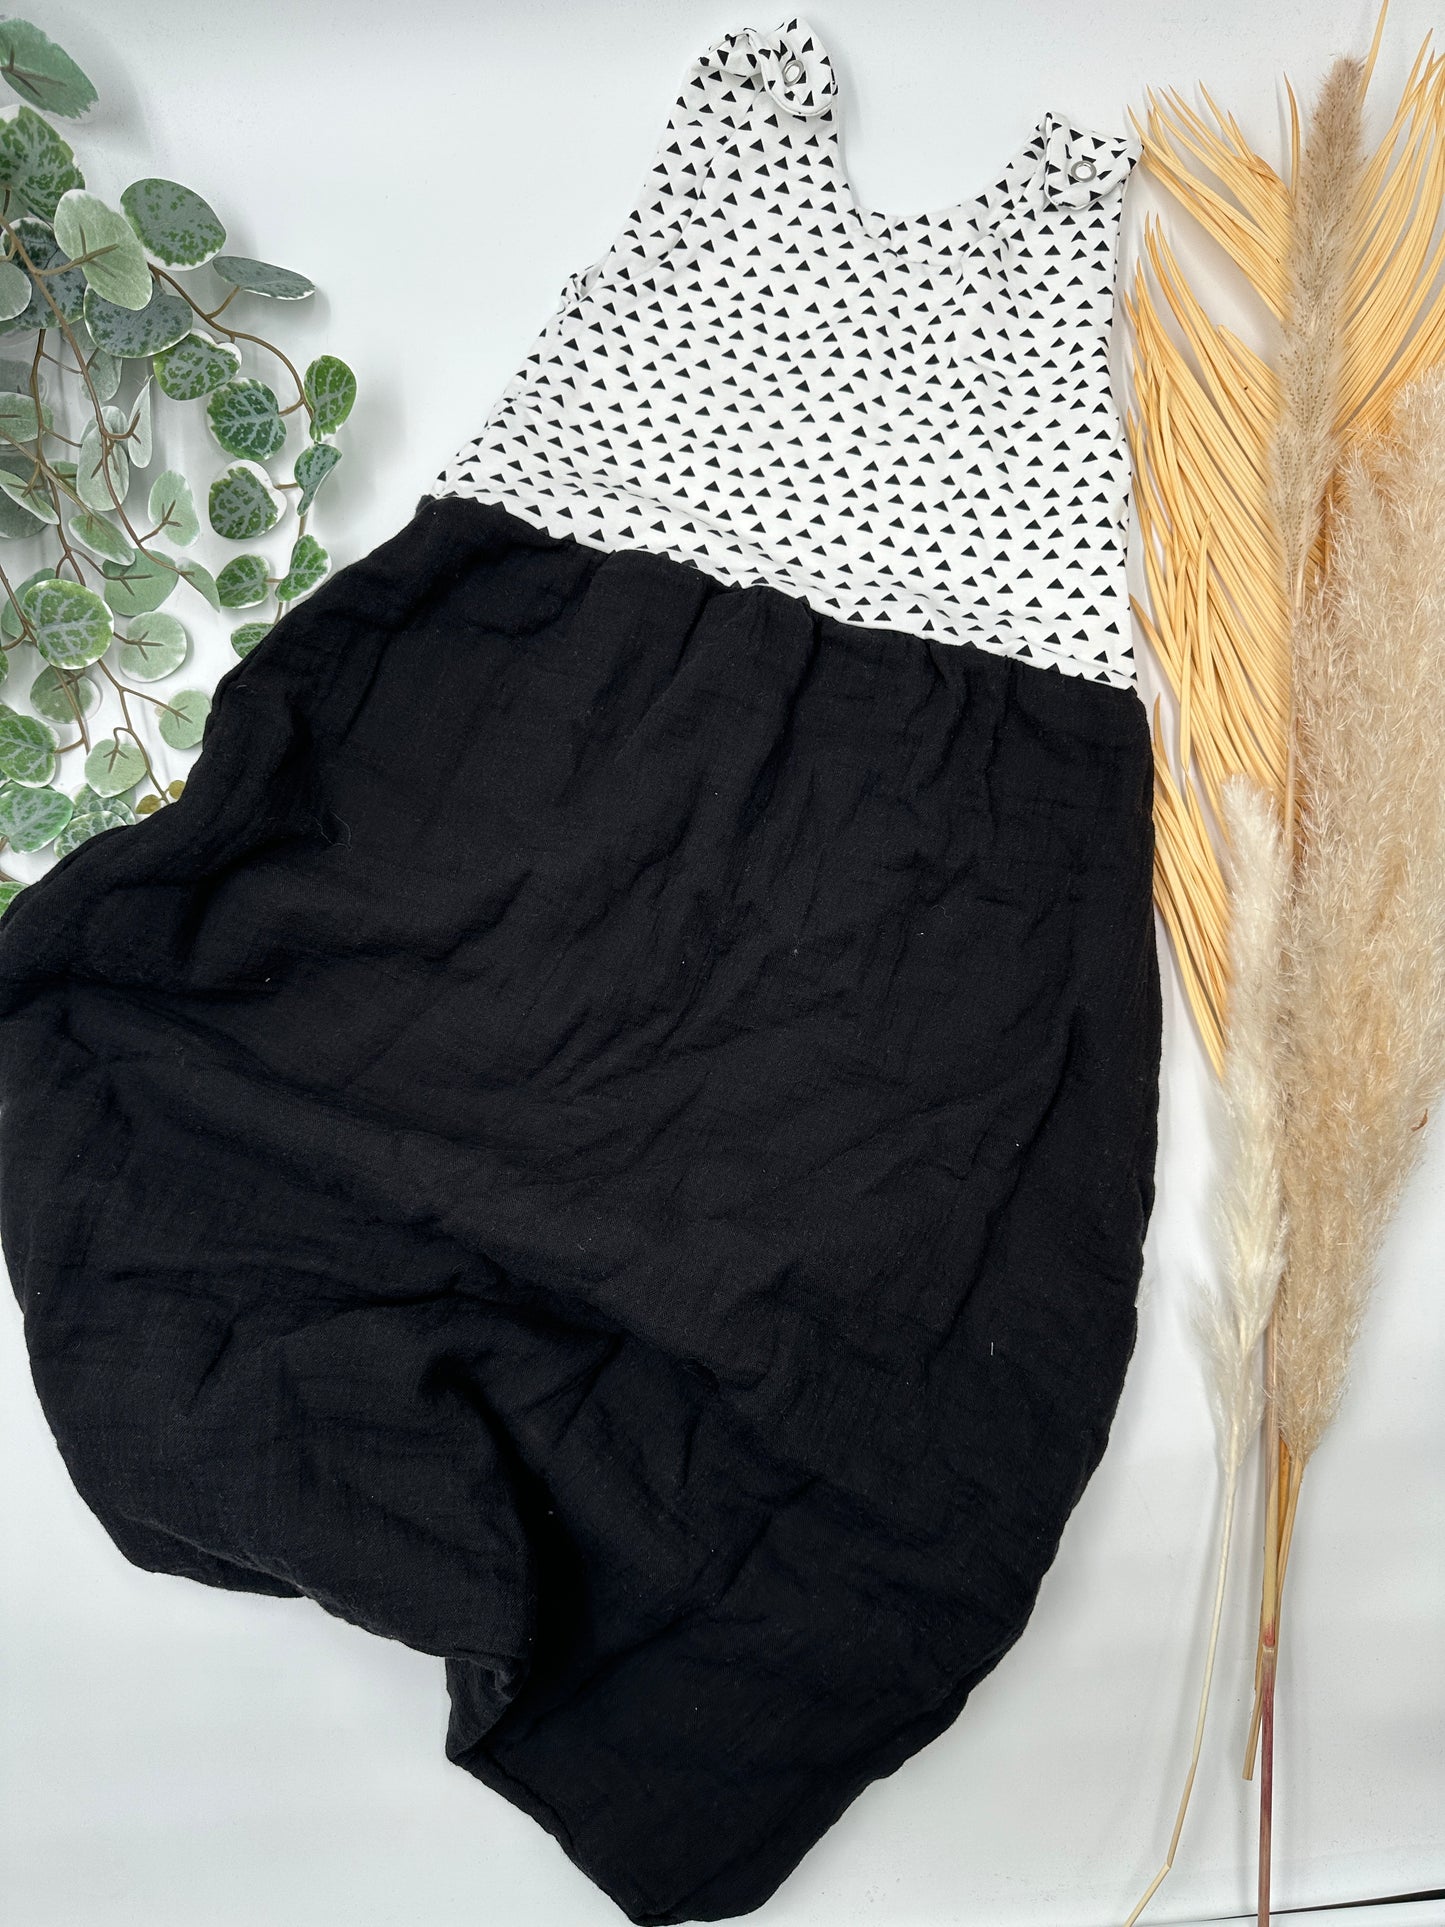 Musselin-Schlafsack - schwarz/weiße Dreiecke (60cm, 80cm)